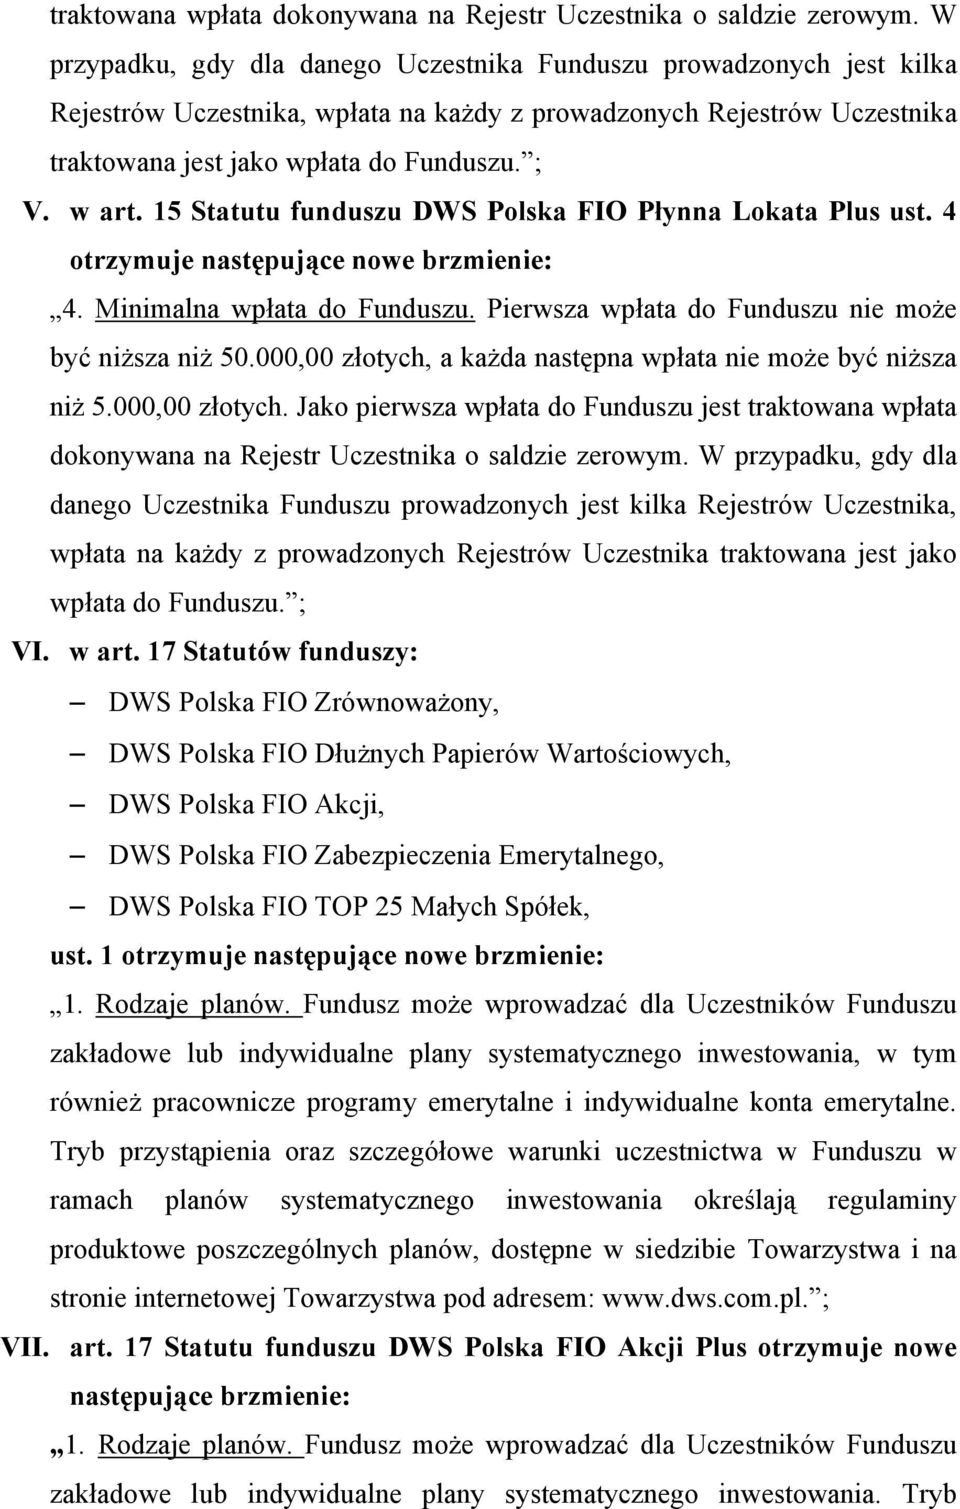 15 Statutu funduszu DWS Polska FIO Płynna Lokata Plus ust. 4 otrzymuje następujące nowe brzmienie: 4. Minimalna wpłata do Funduszu. Pierwsza wpłata do Funduszu nie może być niższa niż 50.